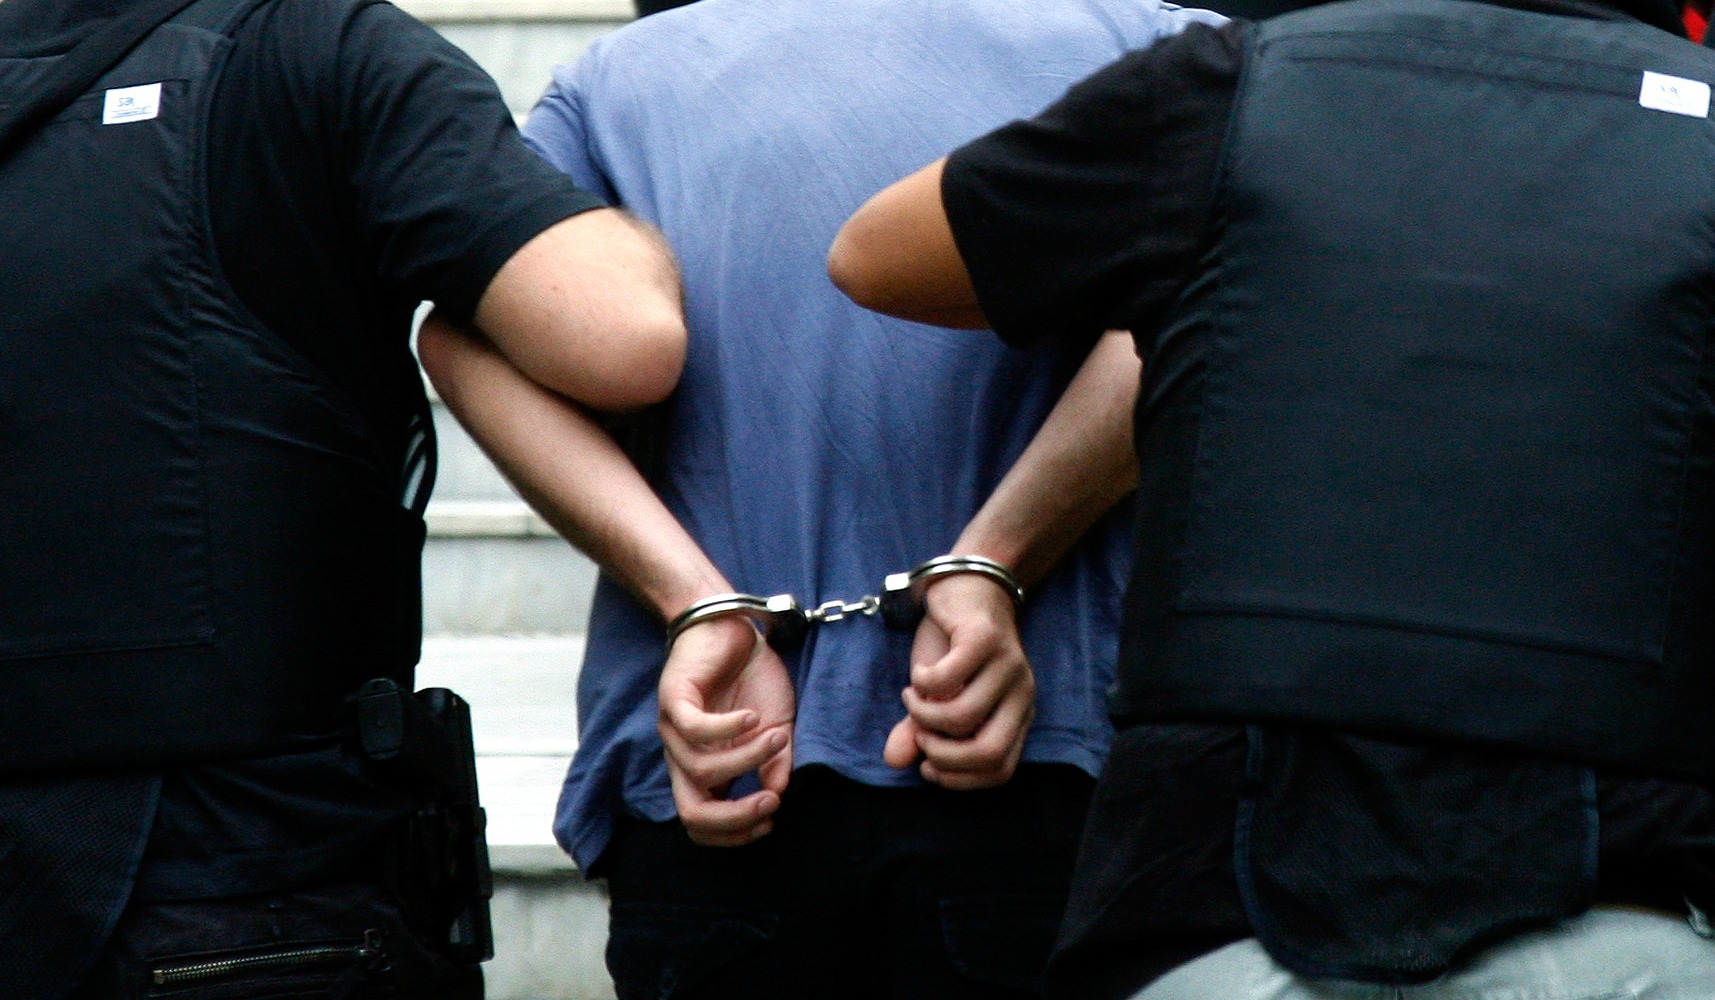 ΛΕΥΚΩΣΙΑ: Στα χέρια της Αστυνομίας 24χρονος- Εξιχνιάζονται δύο υποθέσεις με τη σύλληψή του